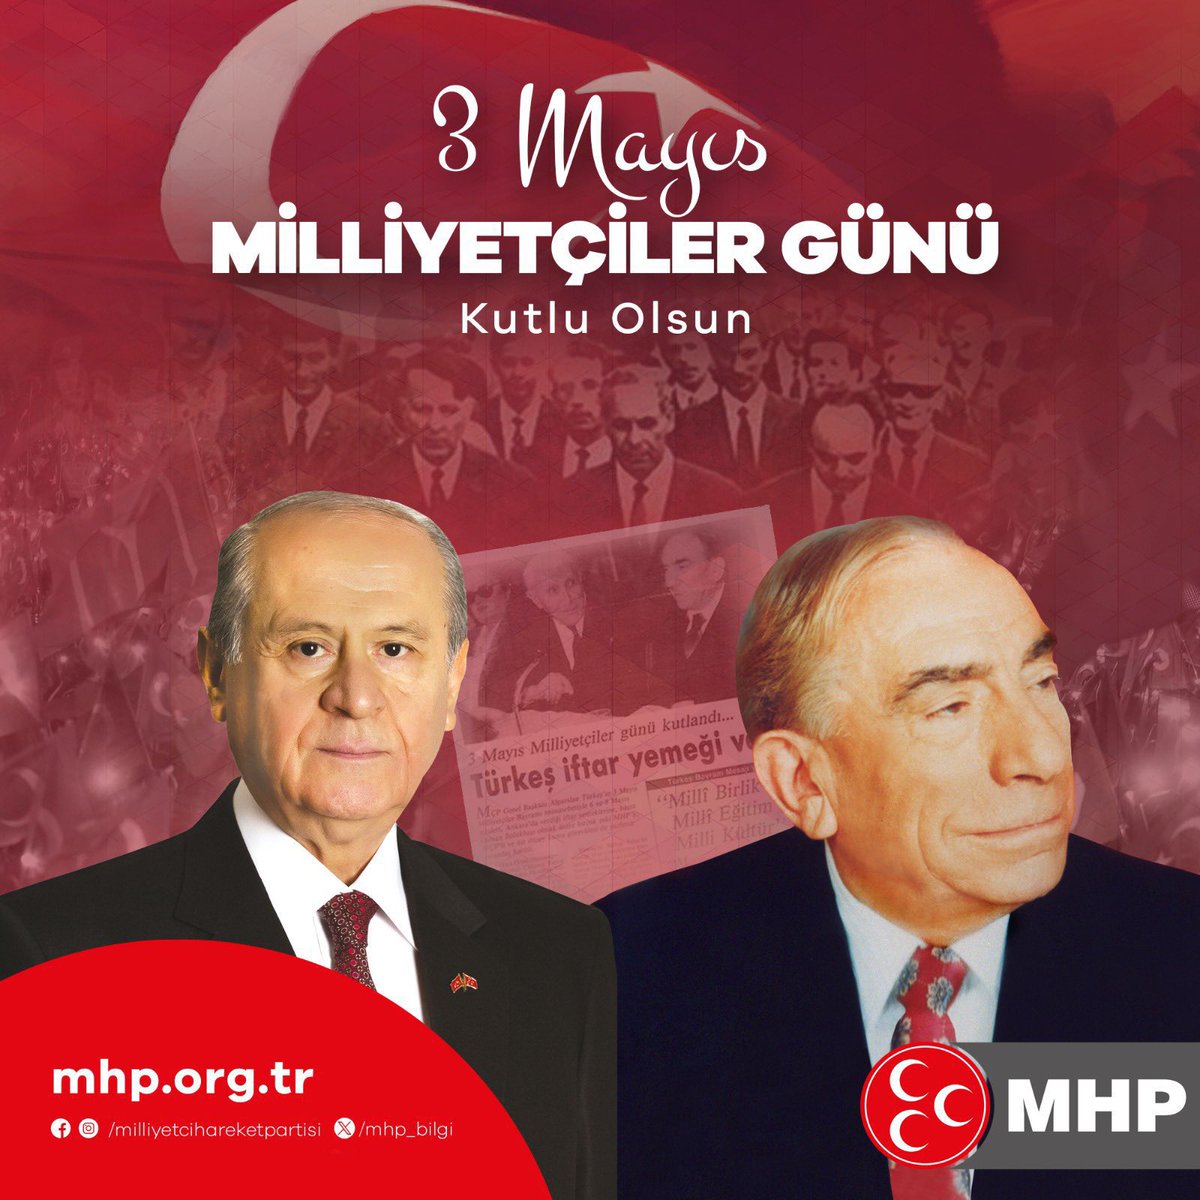 #3Mayıs1944 Türk milliyetçilerinin zulme karşı milli uyanışı başlattığı bir milat olmakla birlikte Türk milletinin varlık ve birlik ülküsünün nişanesidir. Başbuğumuz Alparslan Türkeş ve 3 Mayıs kahramanlarımızı rahmet ve minnetle yad ediyorum. “3 Mayıs ruhu ebediyen yaşasın.”